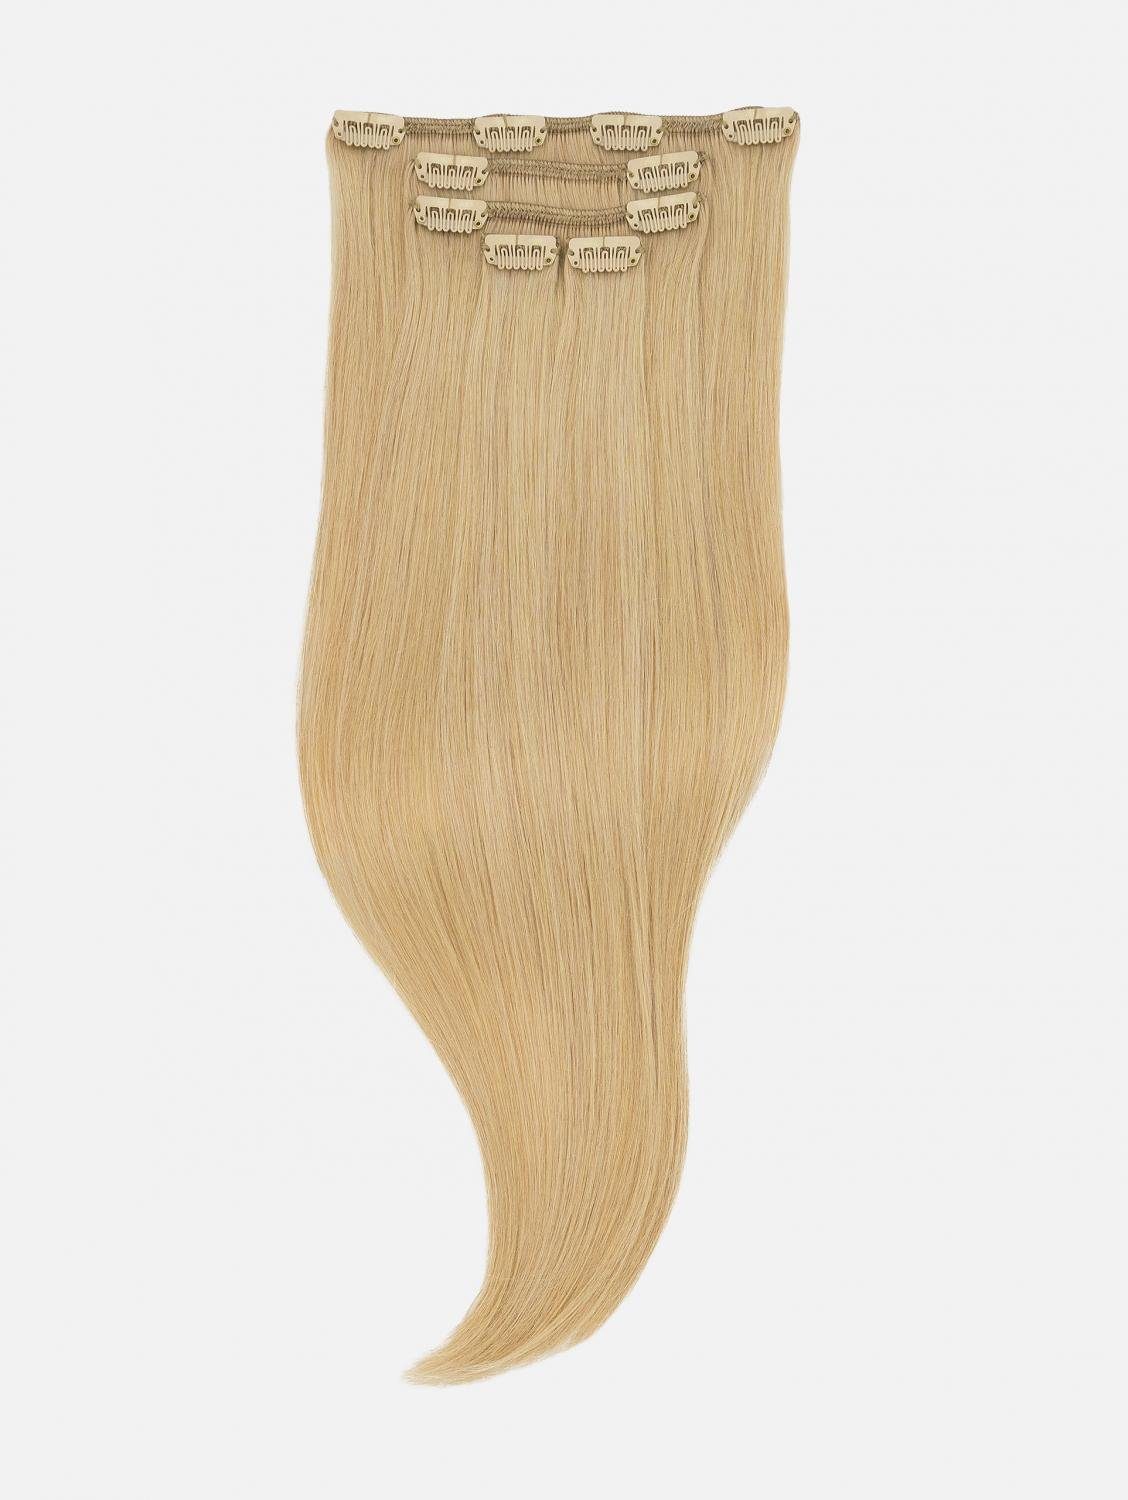 EH Blonde) Extensions 50cm, - #22 40cm, 5-teilig Clip-In Seidenglatt NATURAL - Echthaar Haarverlängerung Echthaar Echthaar-Extension (Sahara